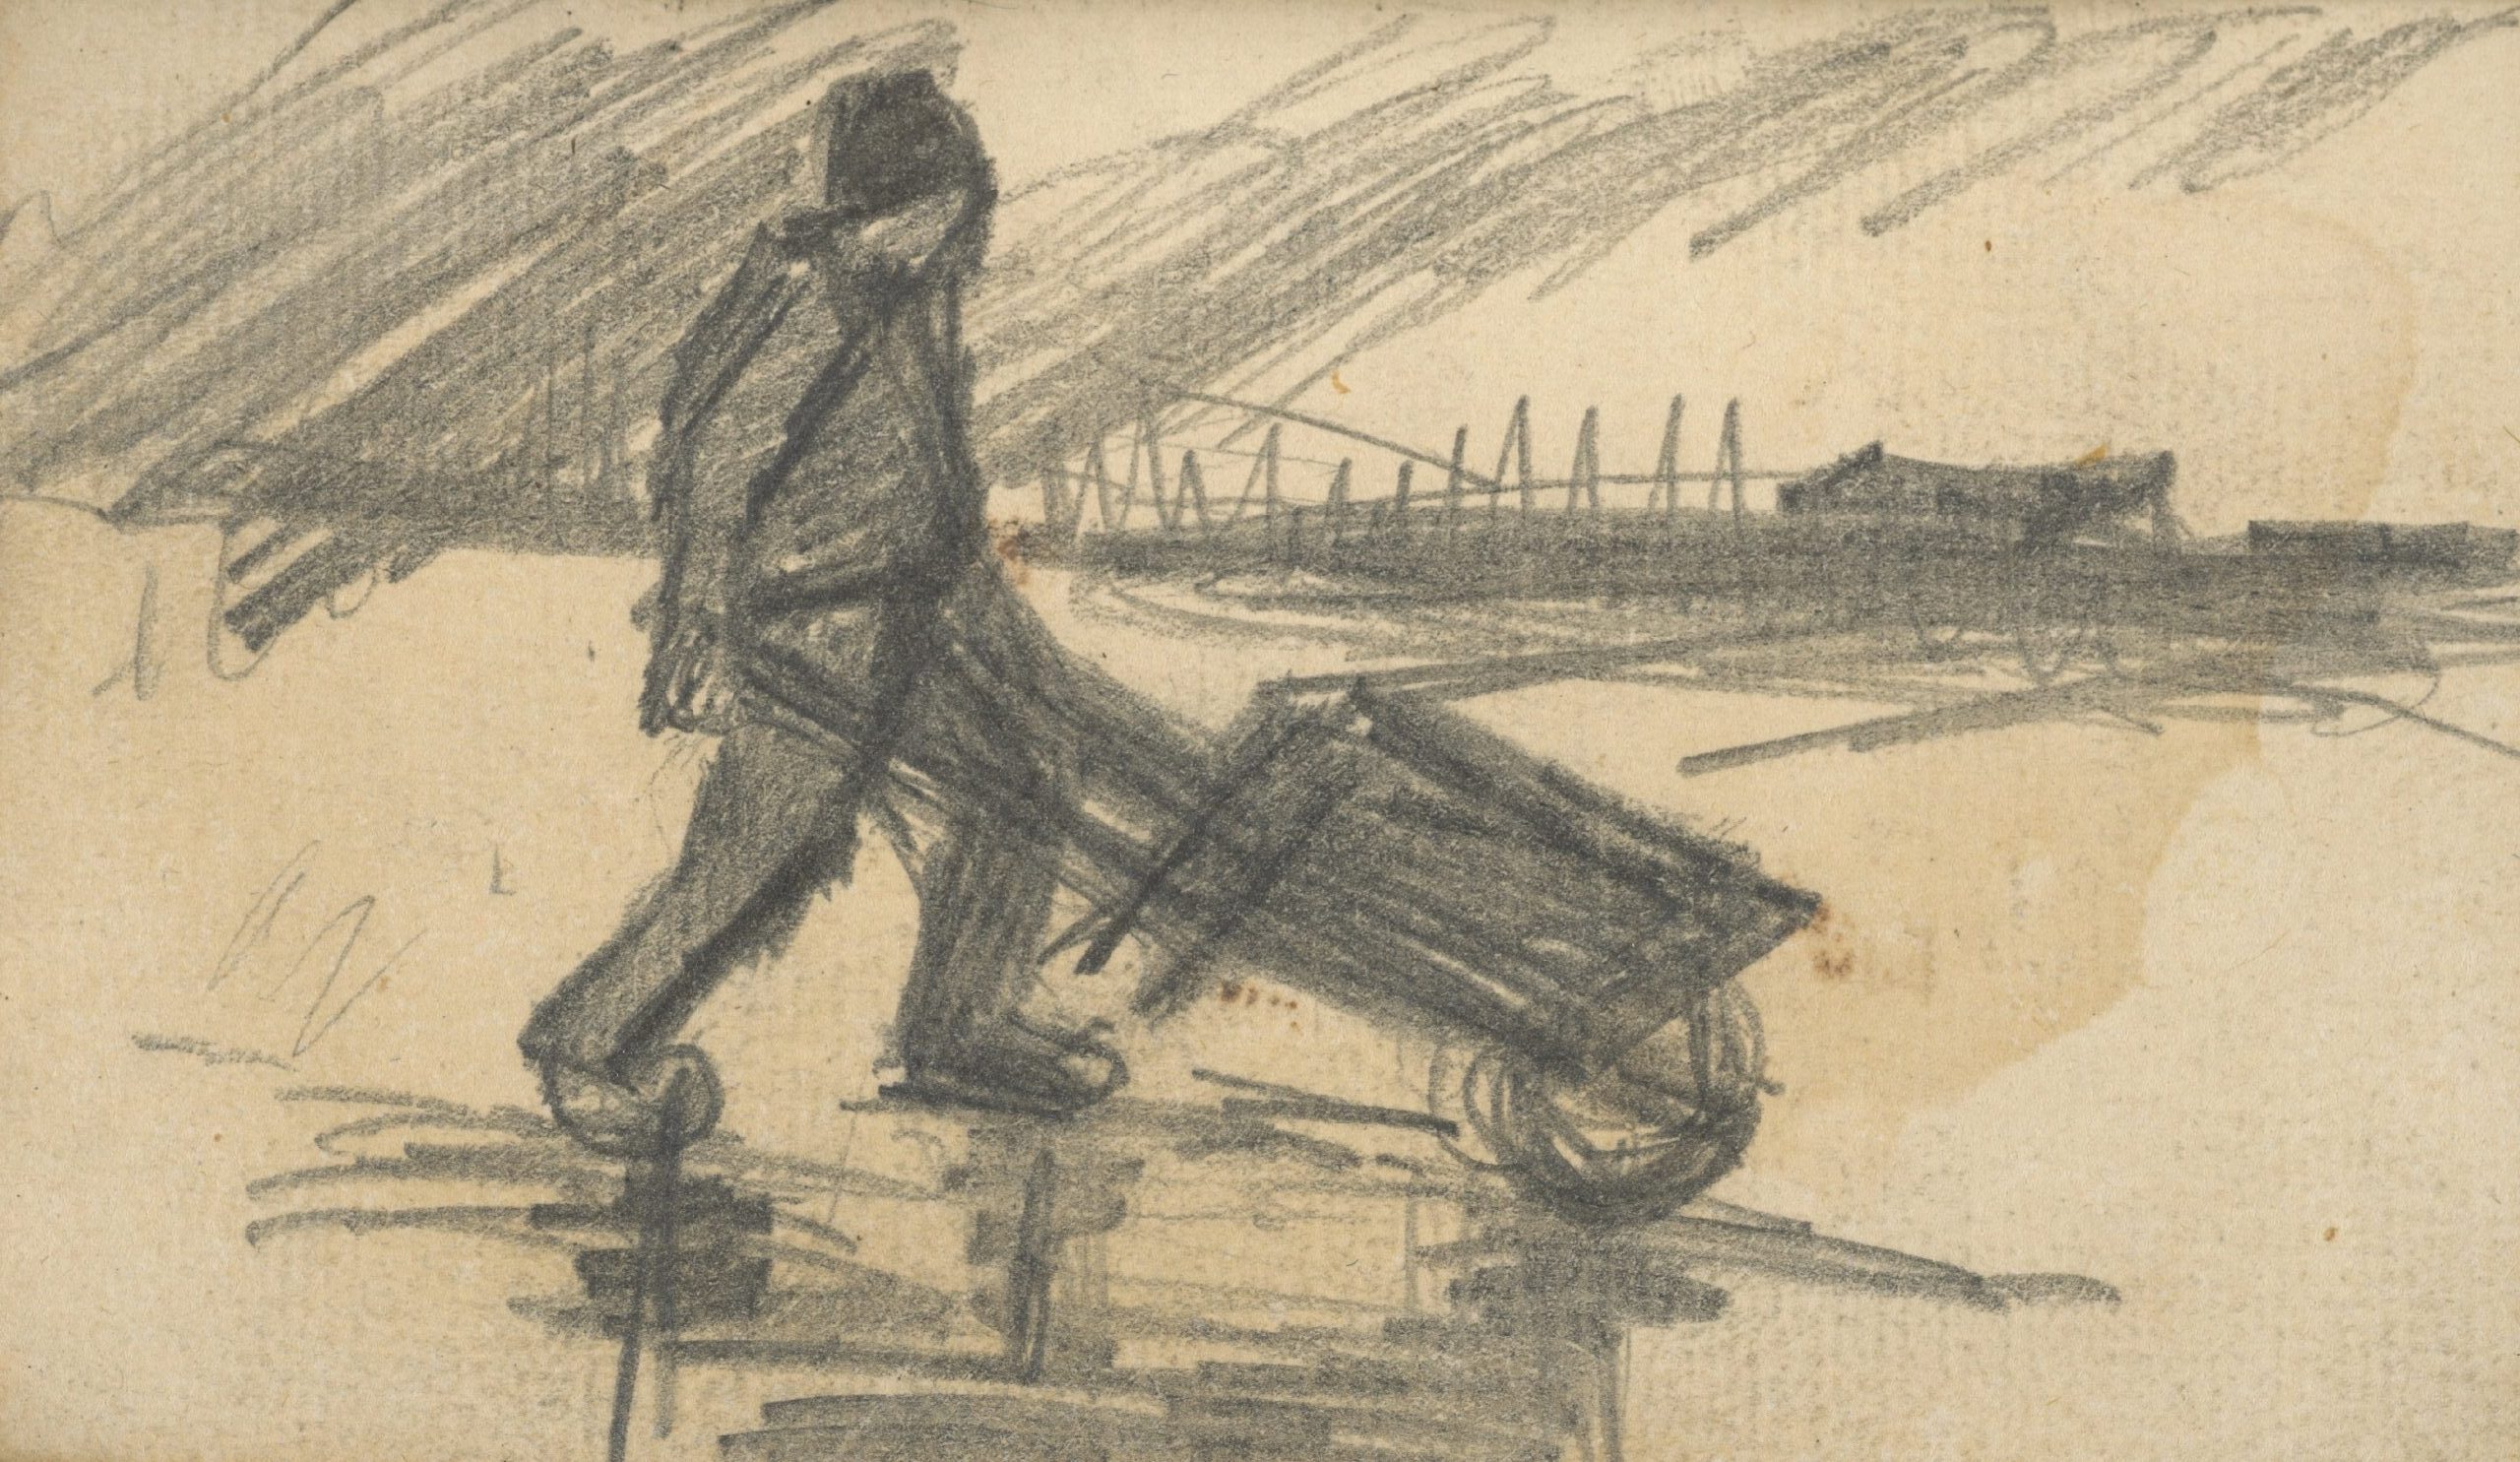 Man met kruiwagen Vincent van Gogh (1853 - 1890), Nuenen, november 1884-september 1885